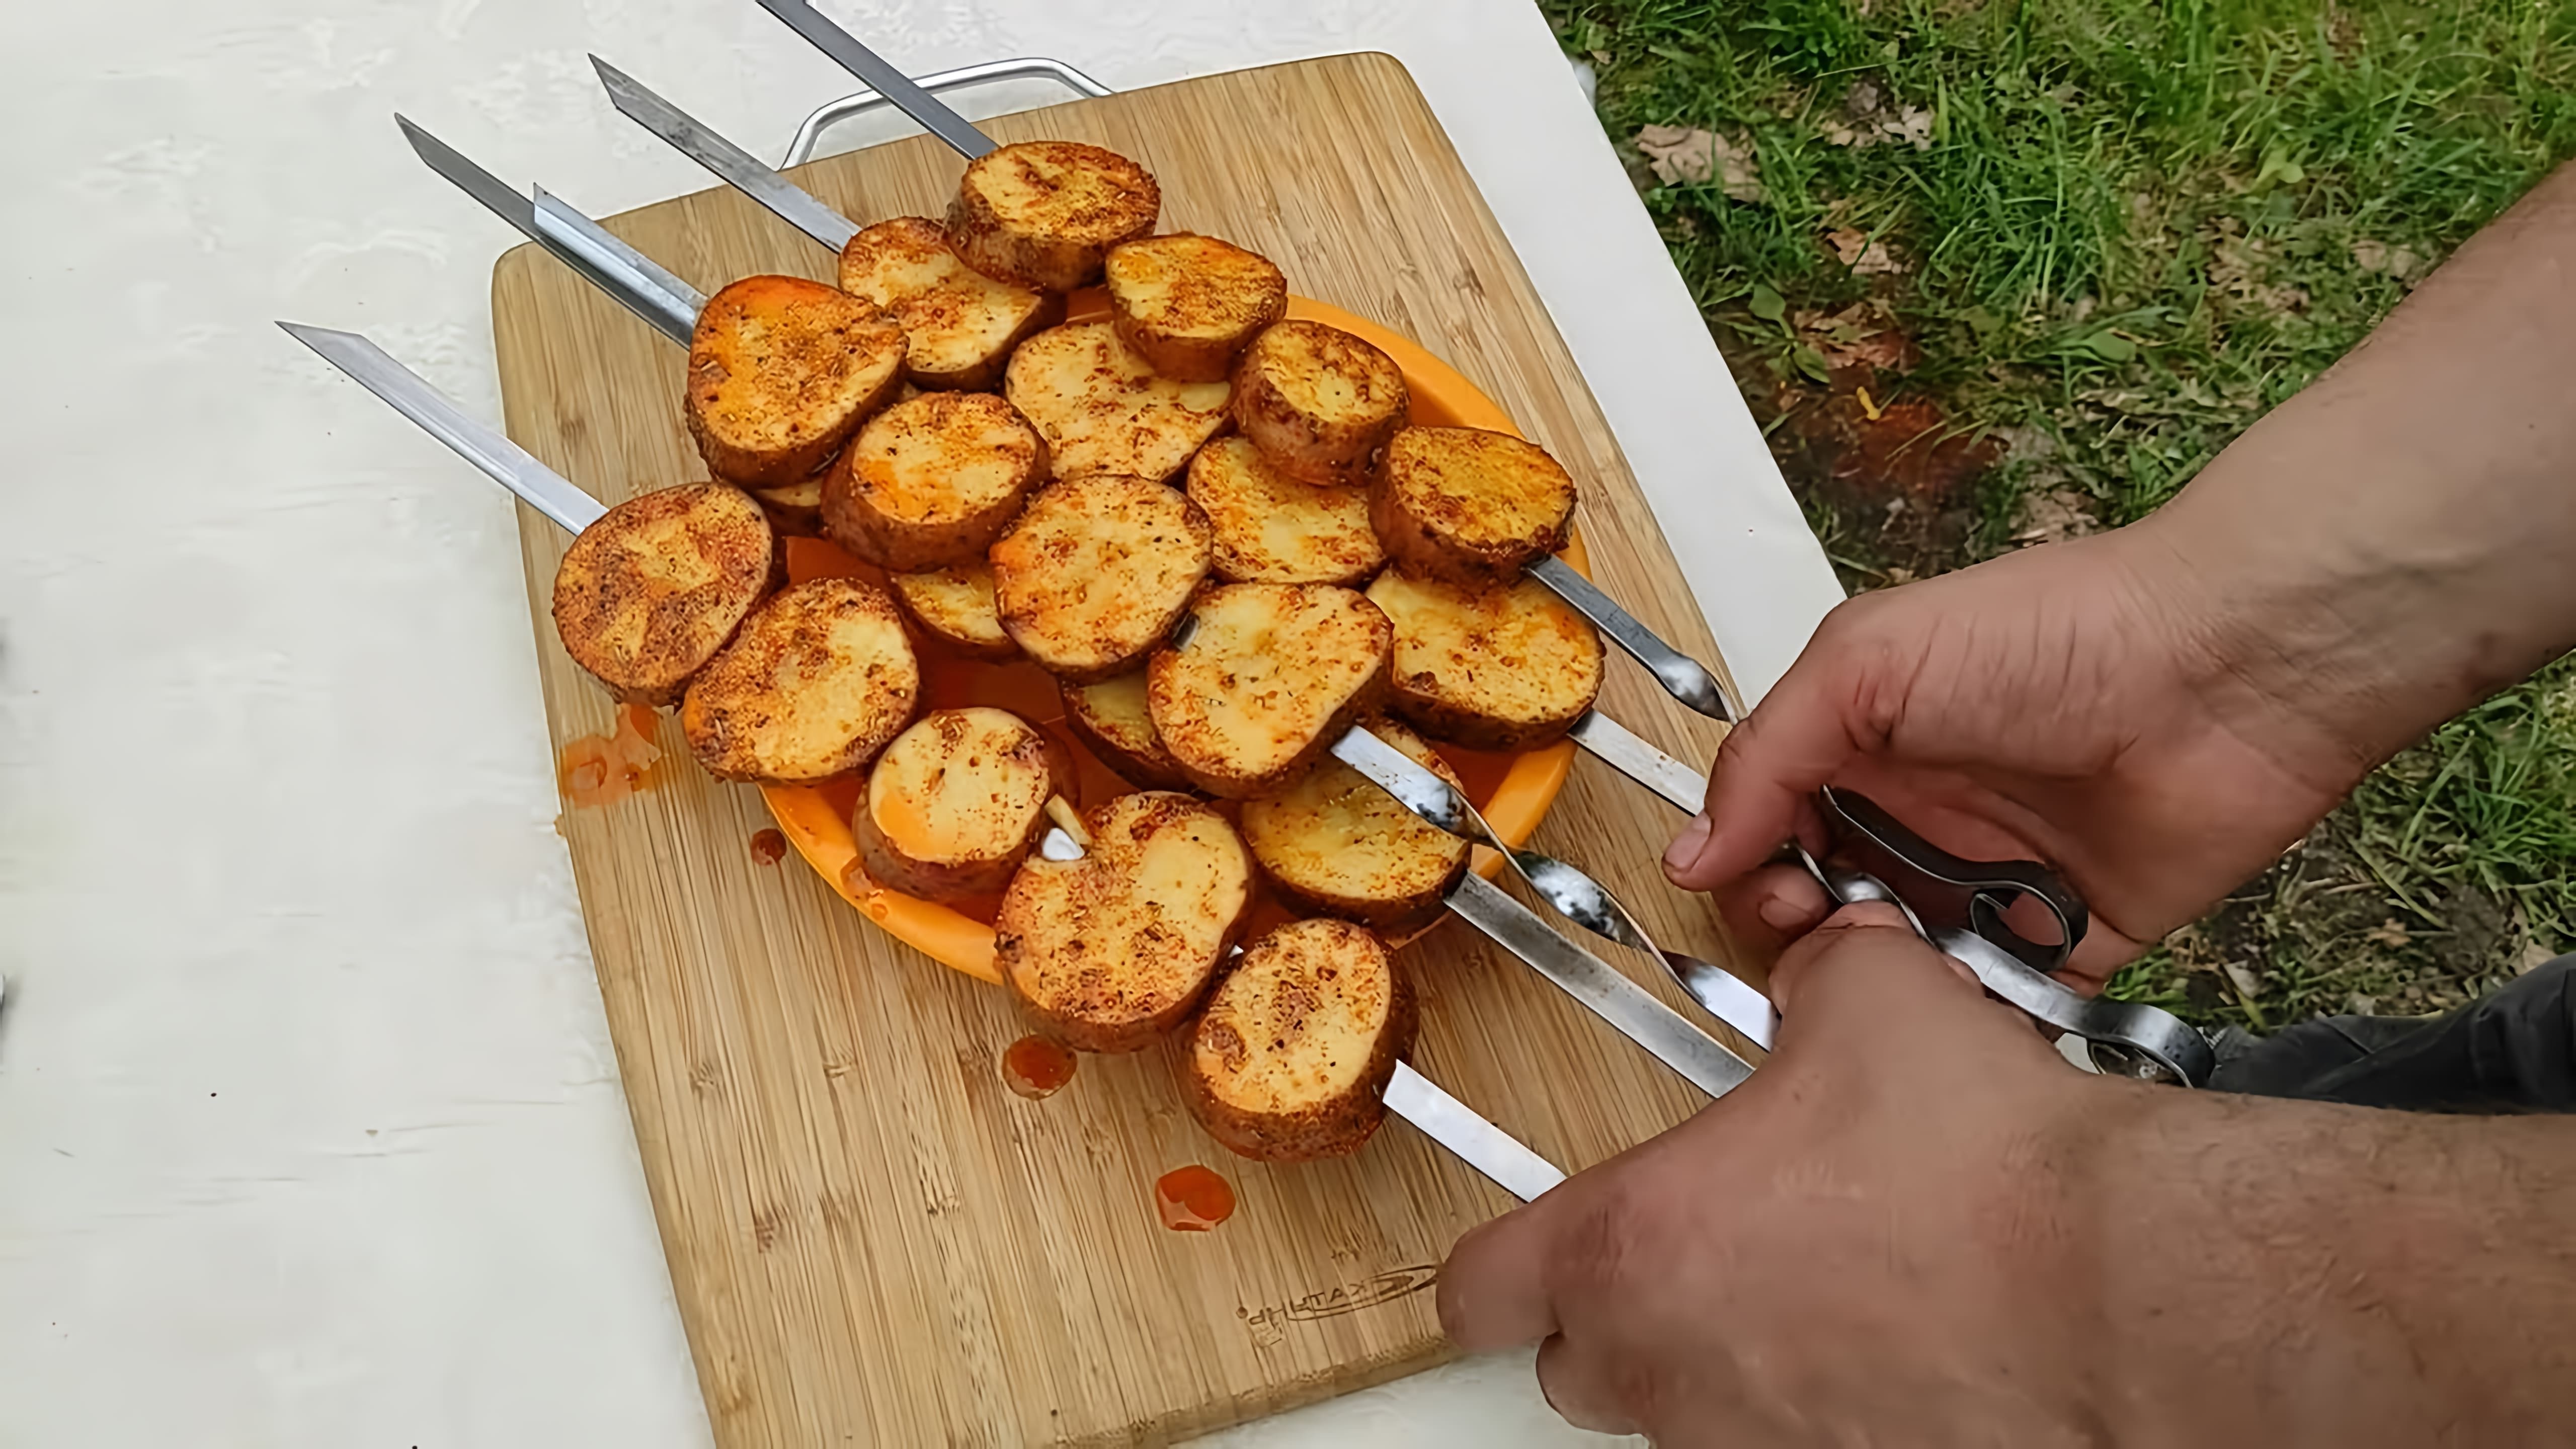 В этом видео демонстрируется процесс приготовления картошки на углях